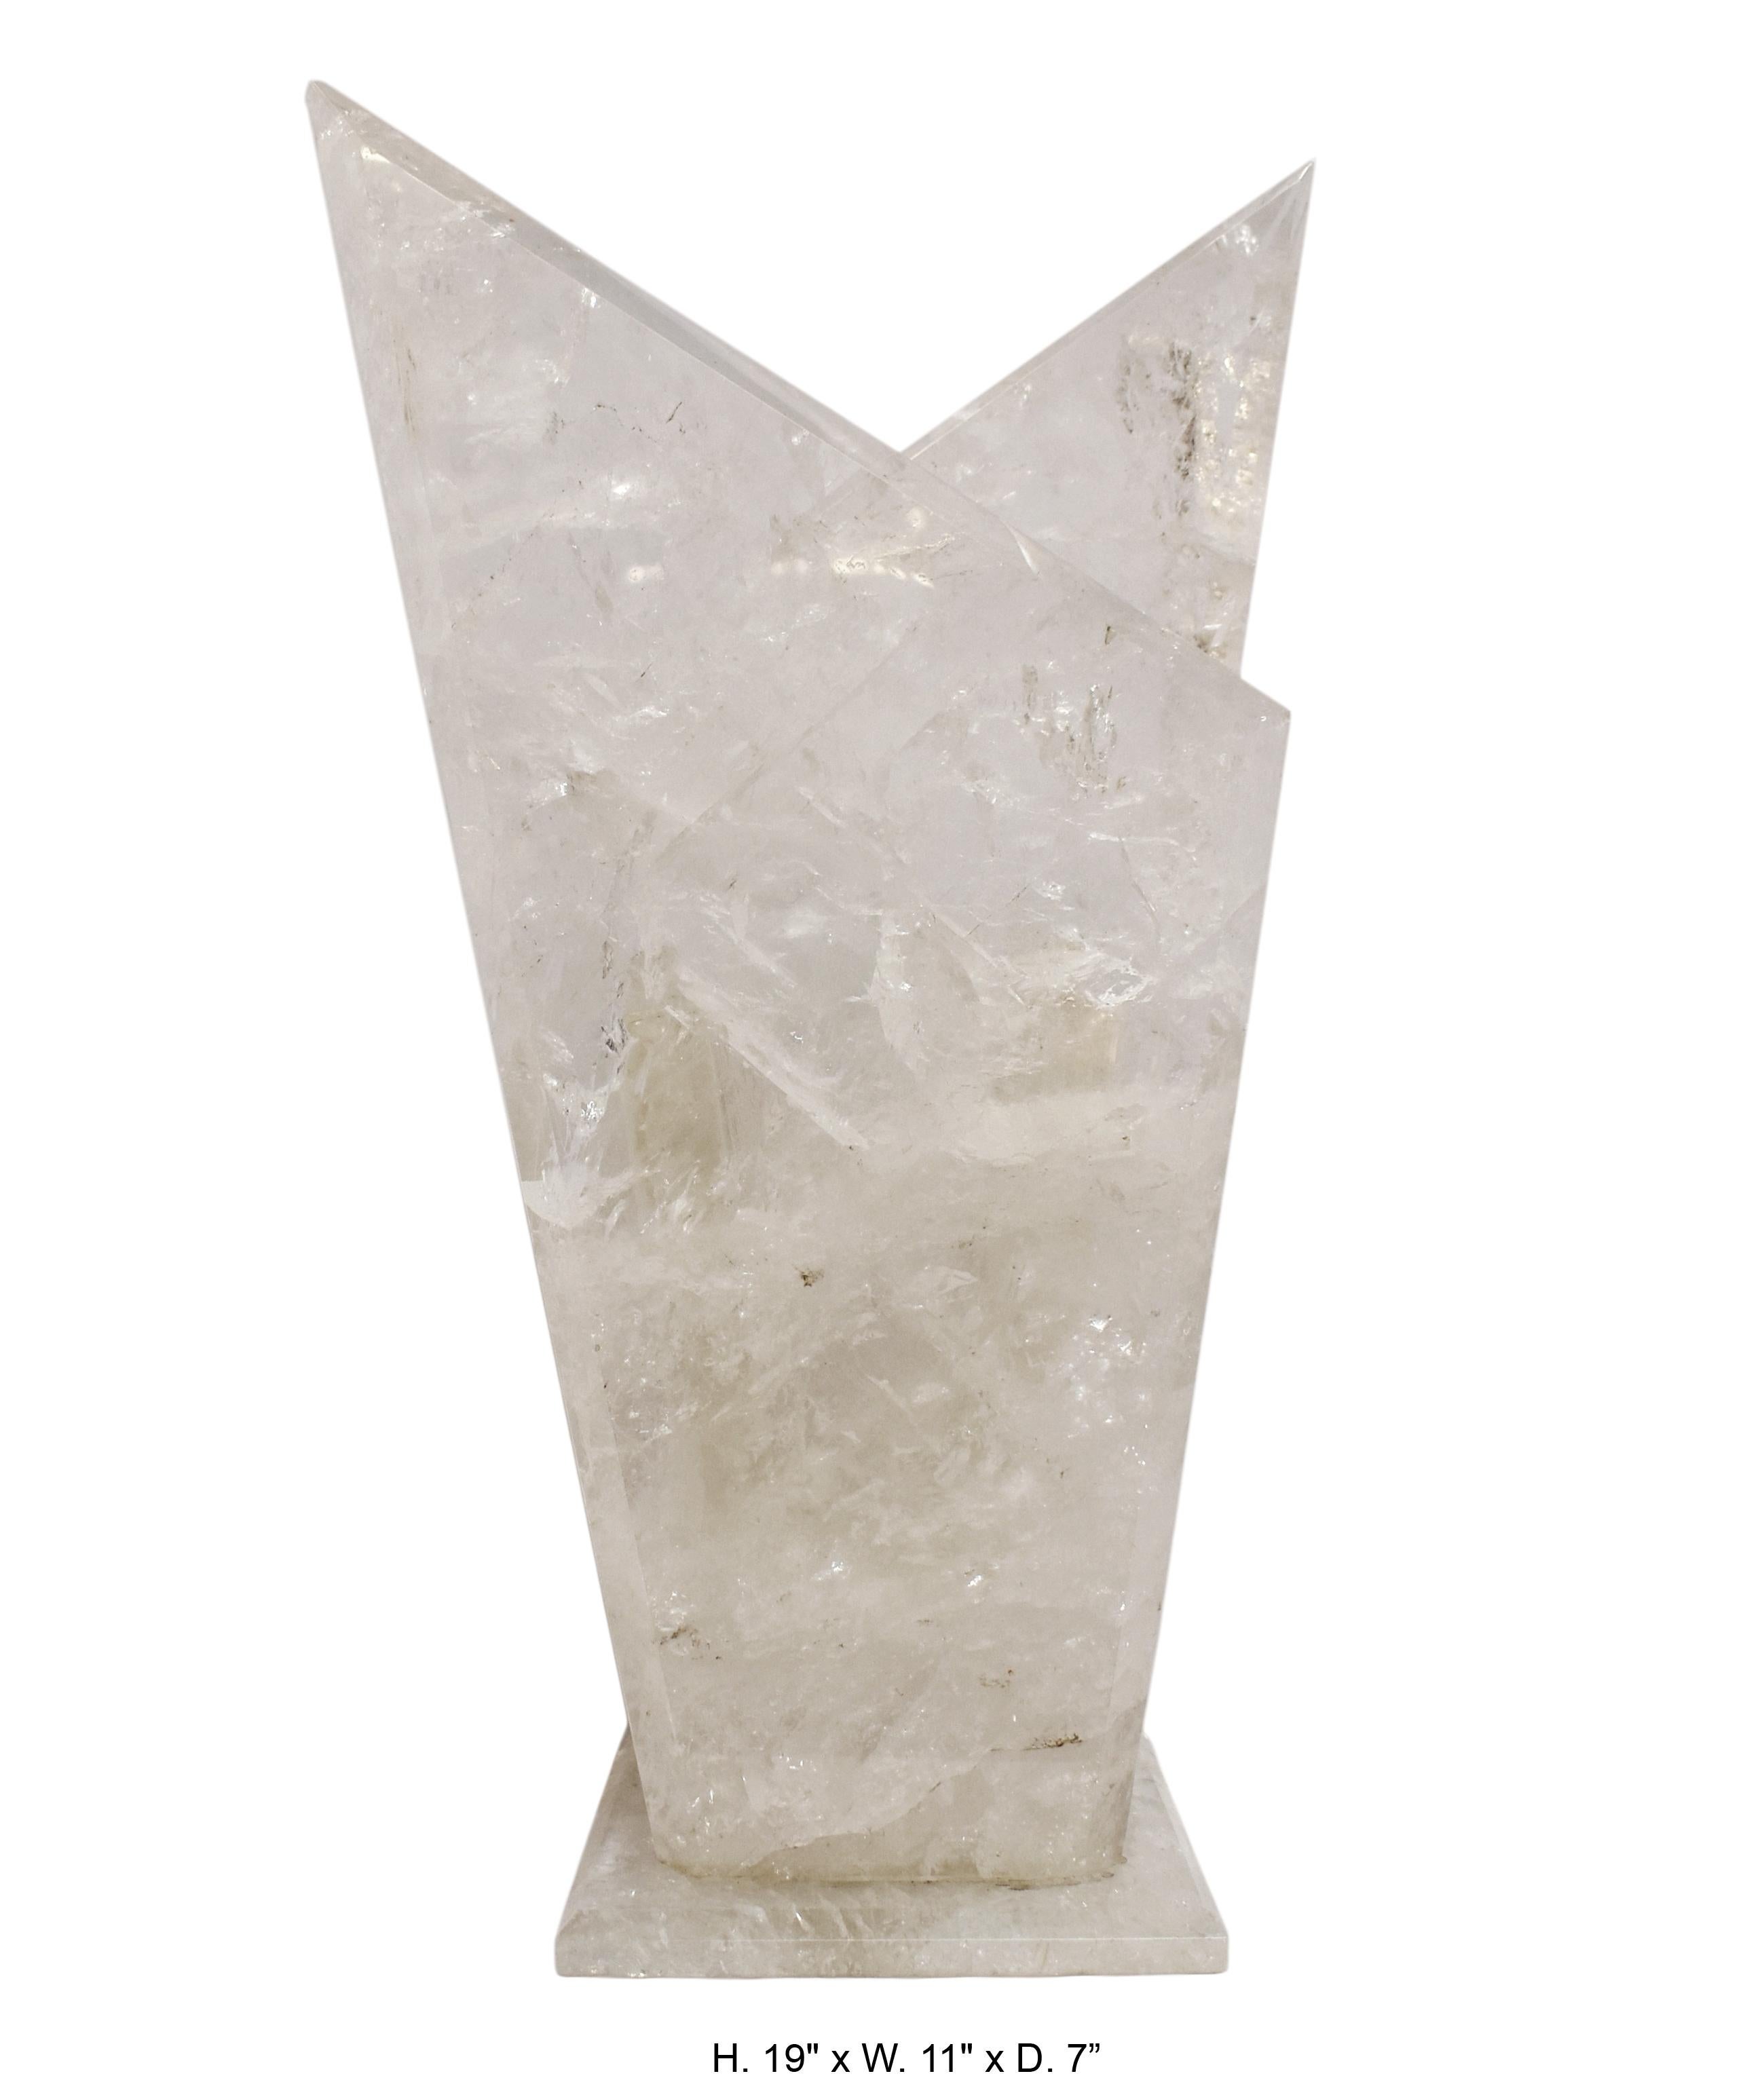 Impressive hand-carved and hand-polished rock crystal vase.

Measures: H. 19